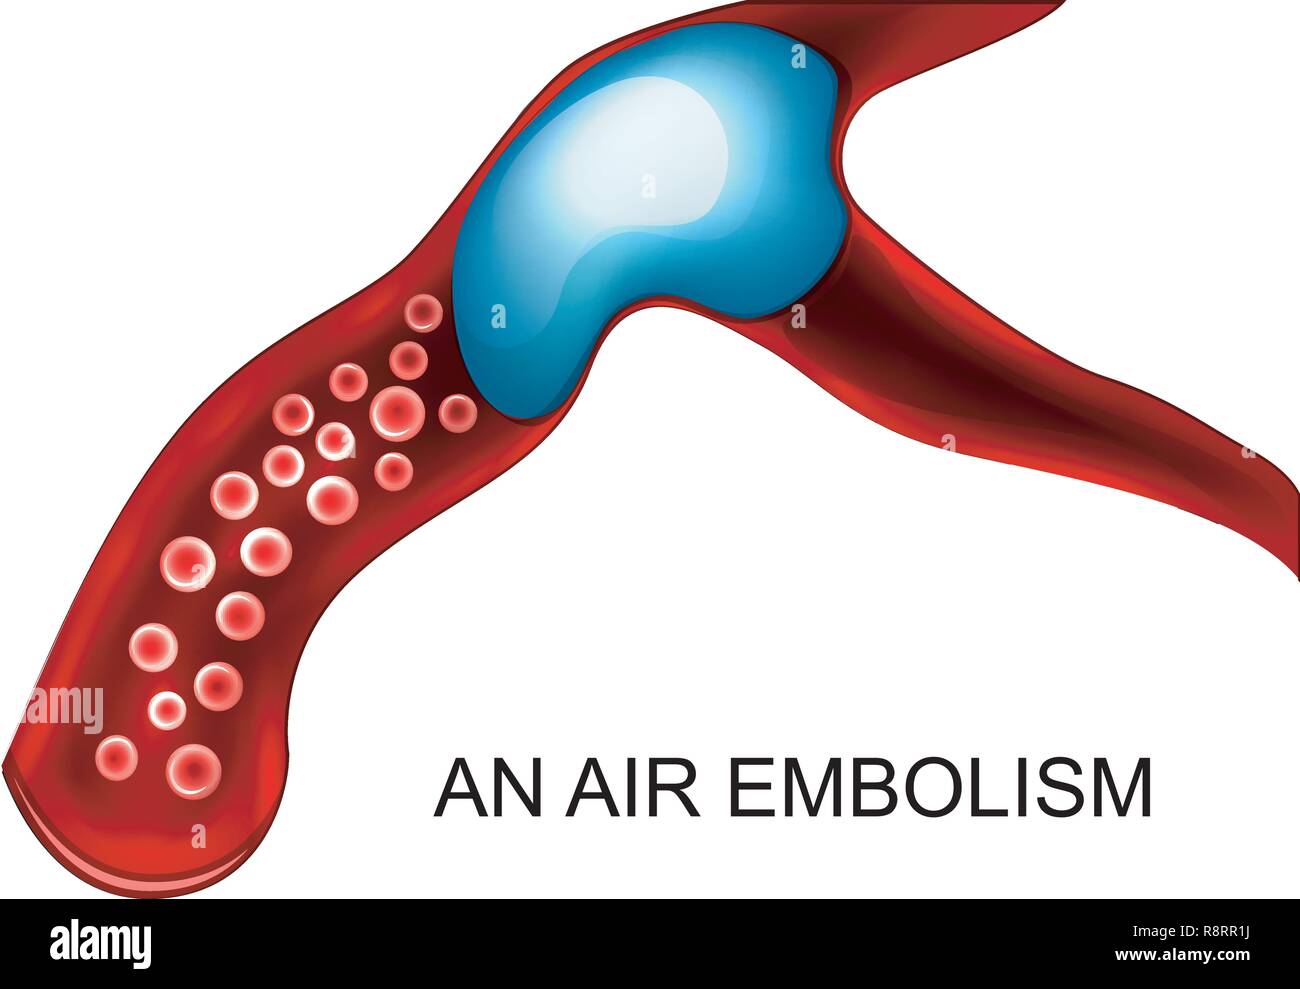 Illustrazione vettoriale di embolia di aria del vaso sanguigno Illustrazione Vettoriale